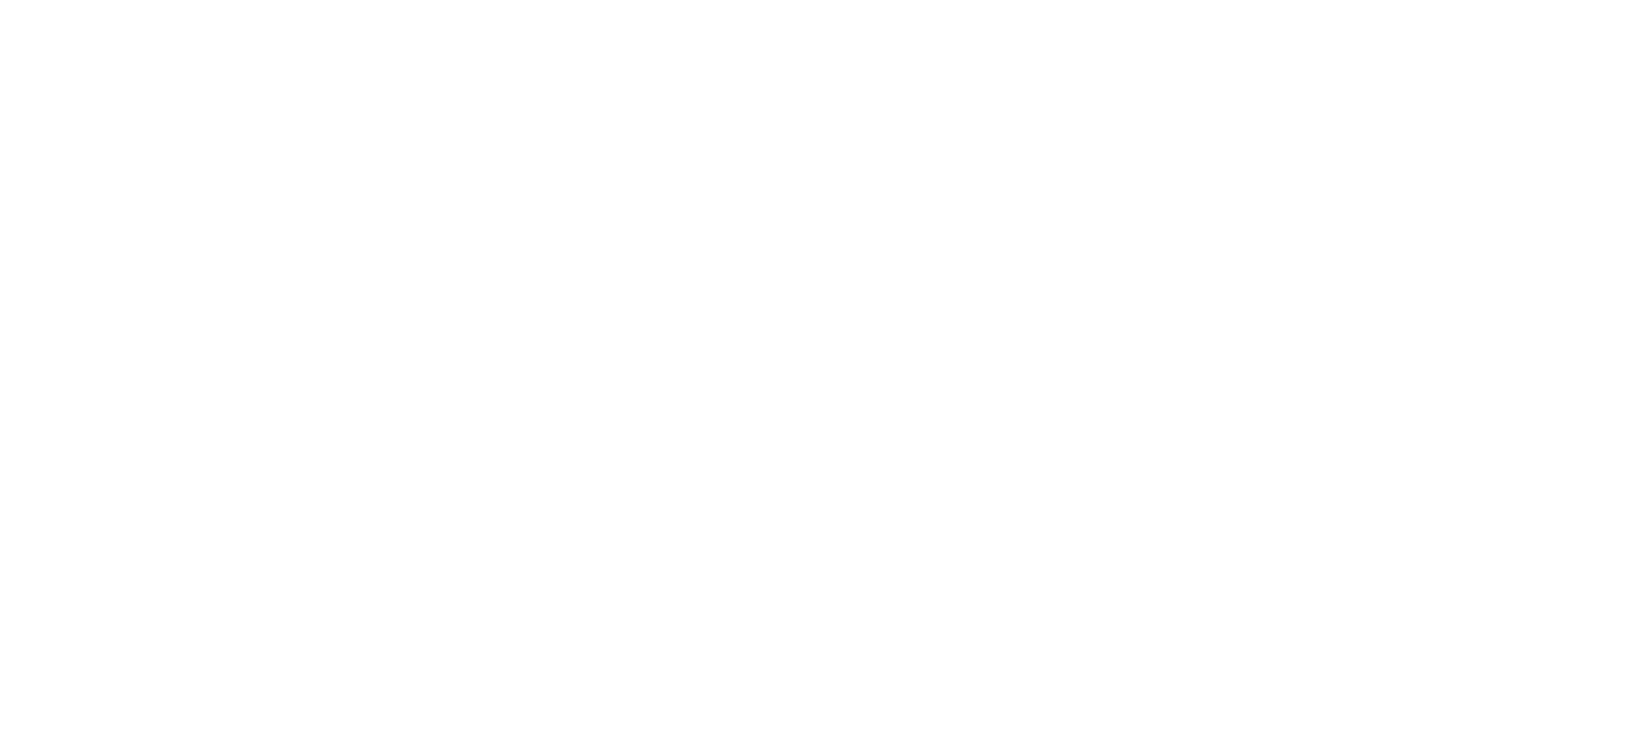 Pathfinder Appraisals logo